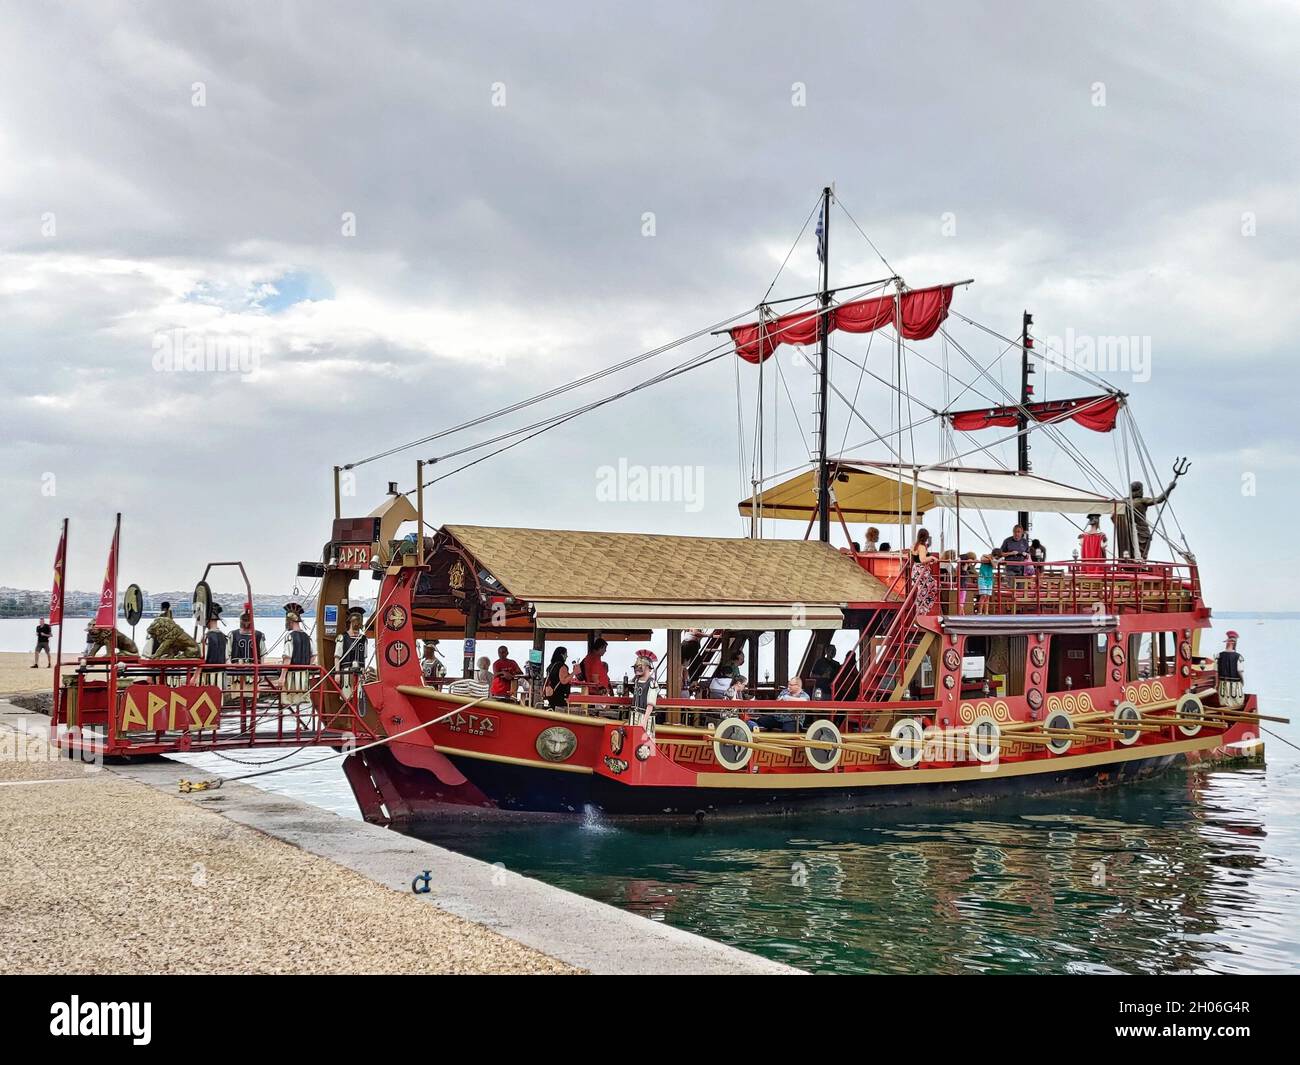 THESSALONIQUE, GRÈCE - 19 septembre 2021 : un ferry touristique traditionnel de la mythologie grecque à Thessalonique, Grèce Banque D'Images